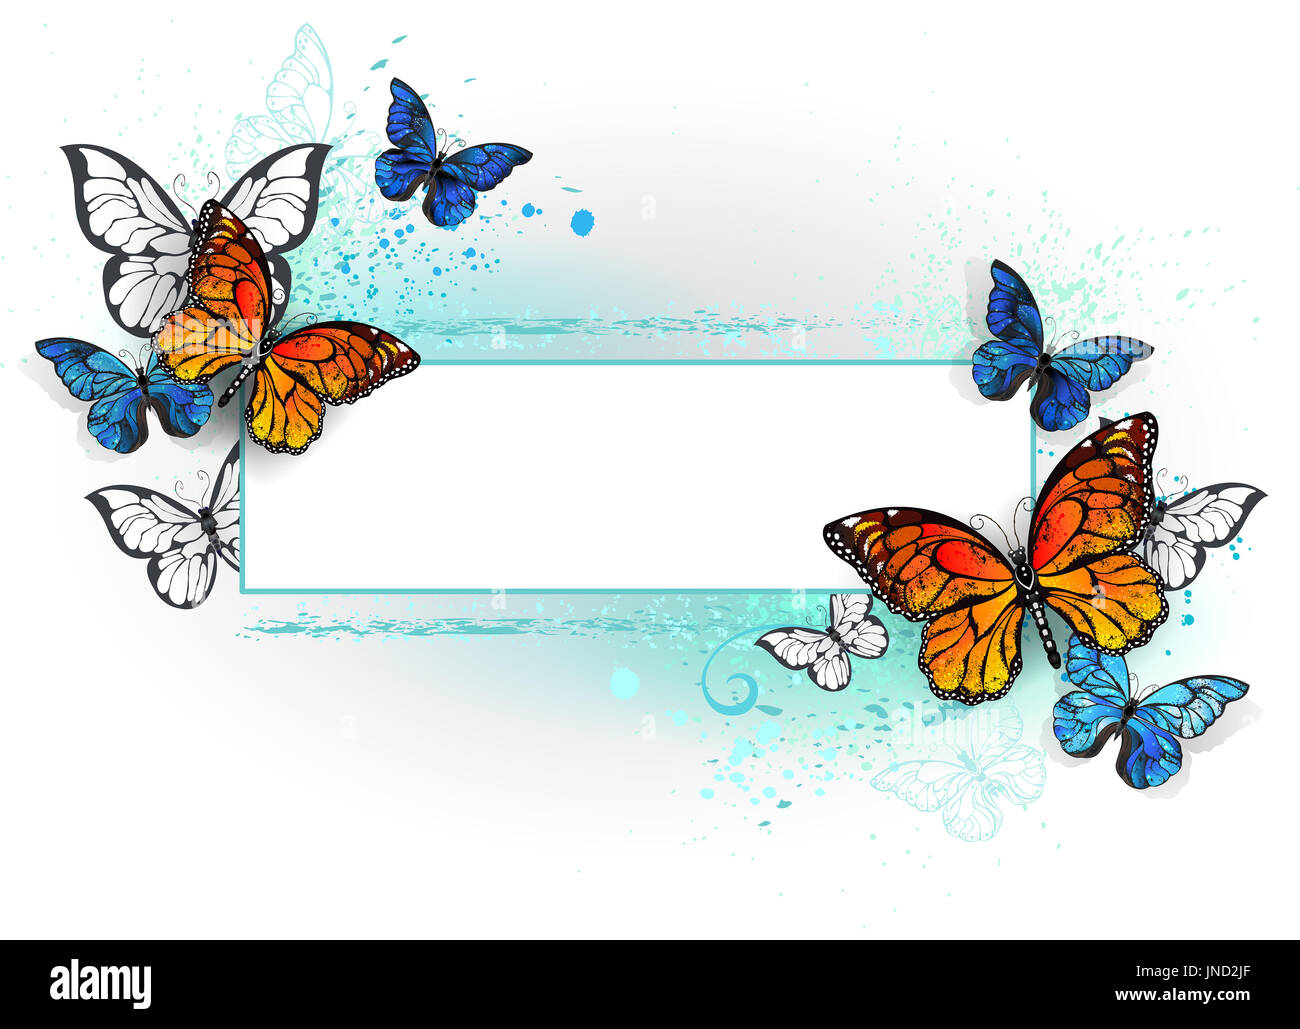 Bannière rectangulaire avec papillon morpho bleu et orange papillon monarque sur un fond blanc. Morpho. Papillon monarque. Conception avec les papillons. Banque D'Images